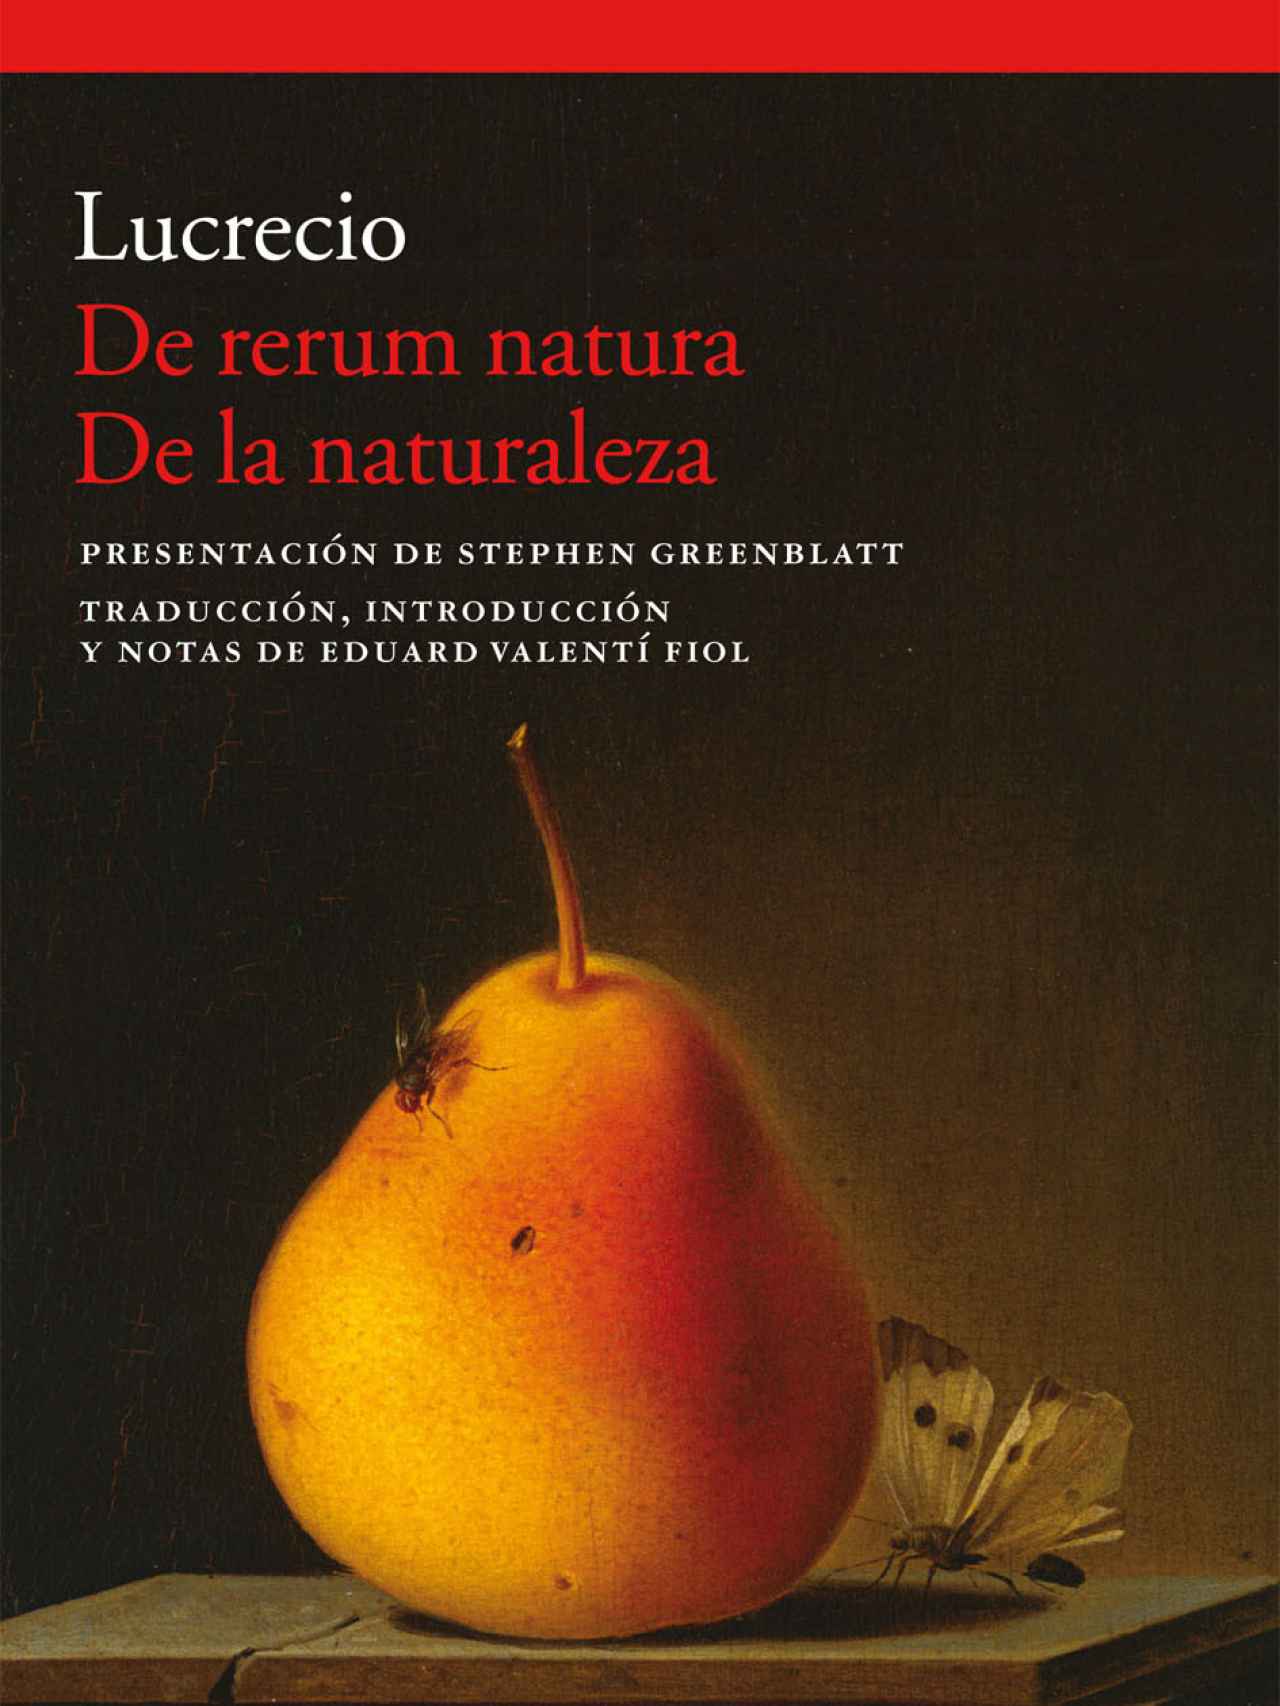 'De rerum natura'